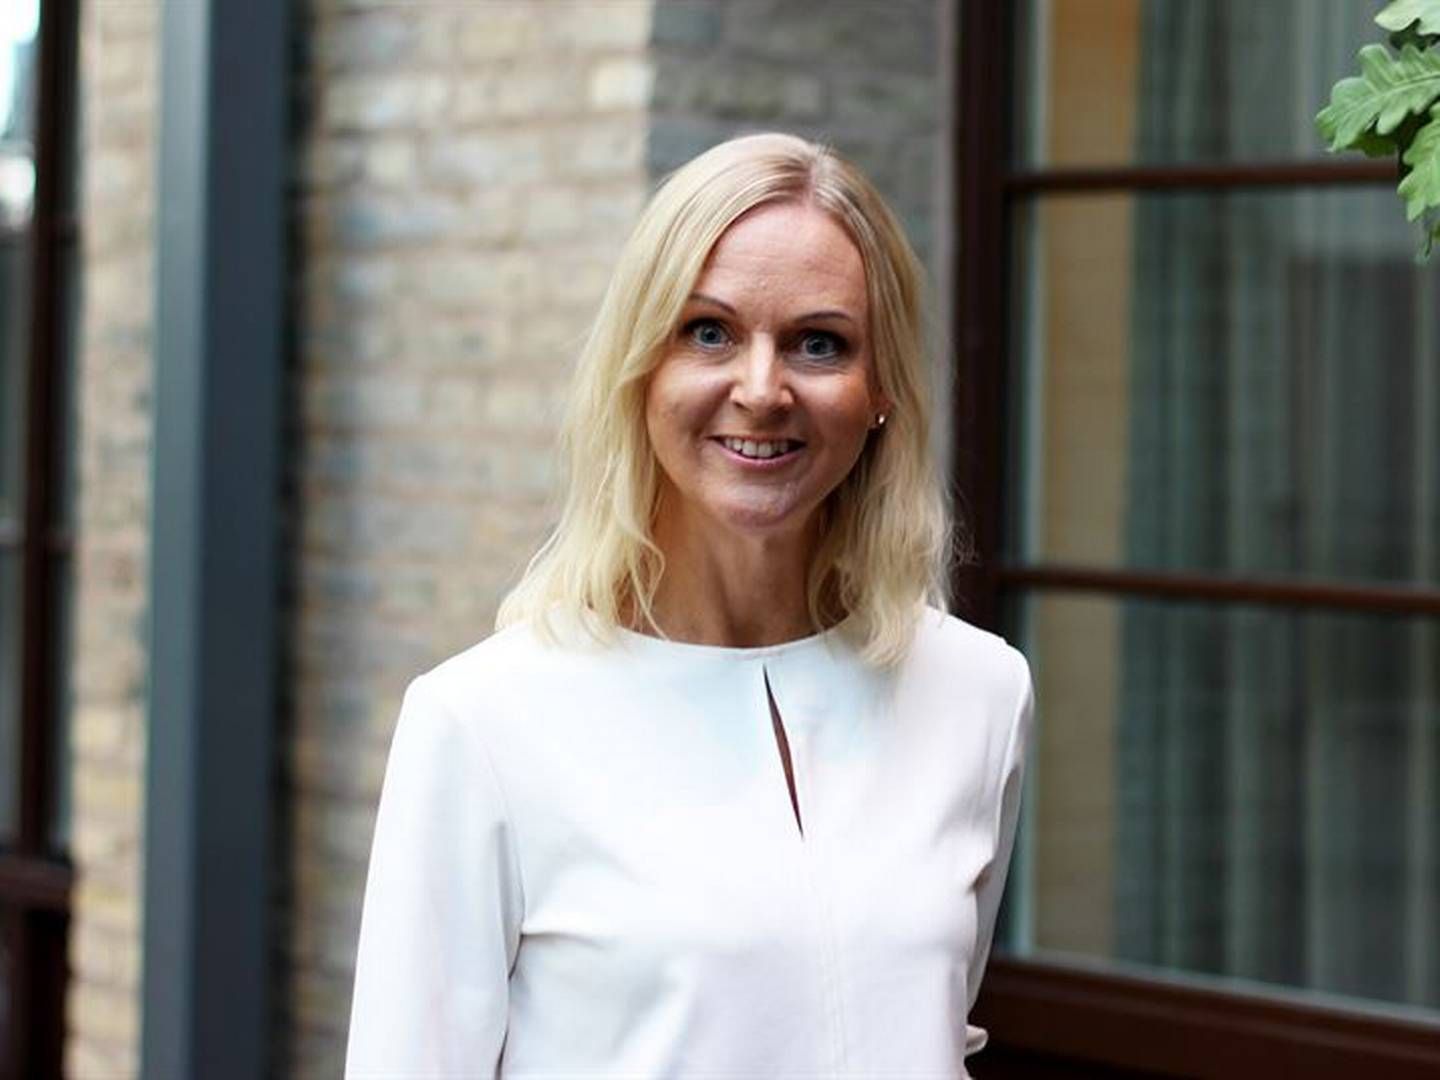 FORLATER: Annelie Forsberg har valgt å forlate Lindex etter nesten seks år i selskapet. | Foto: Lindex